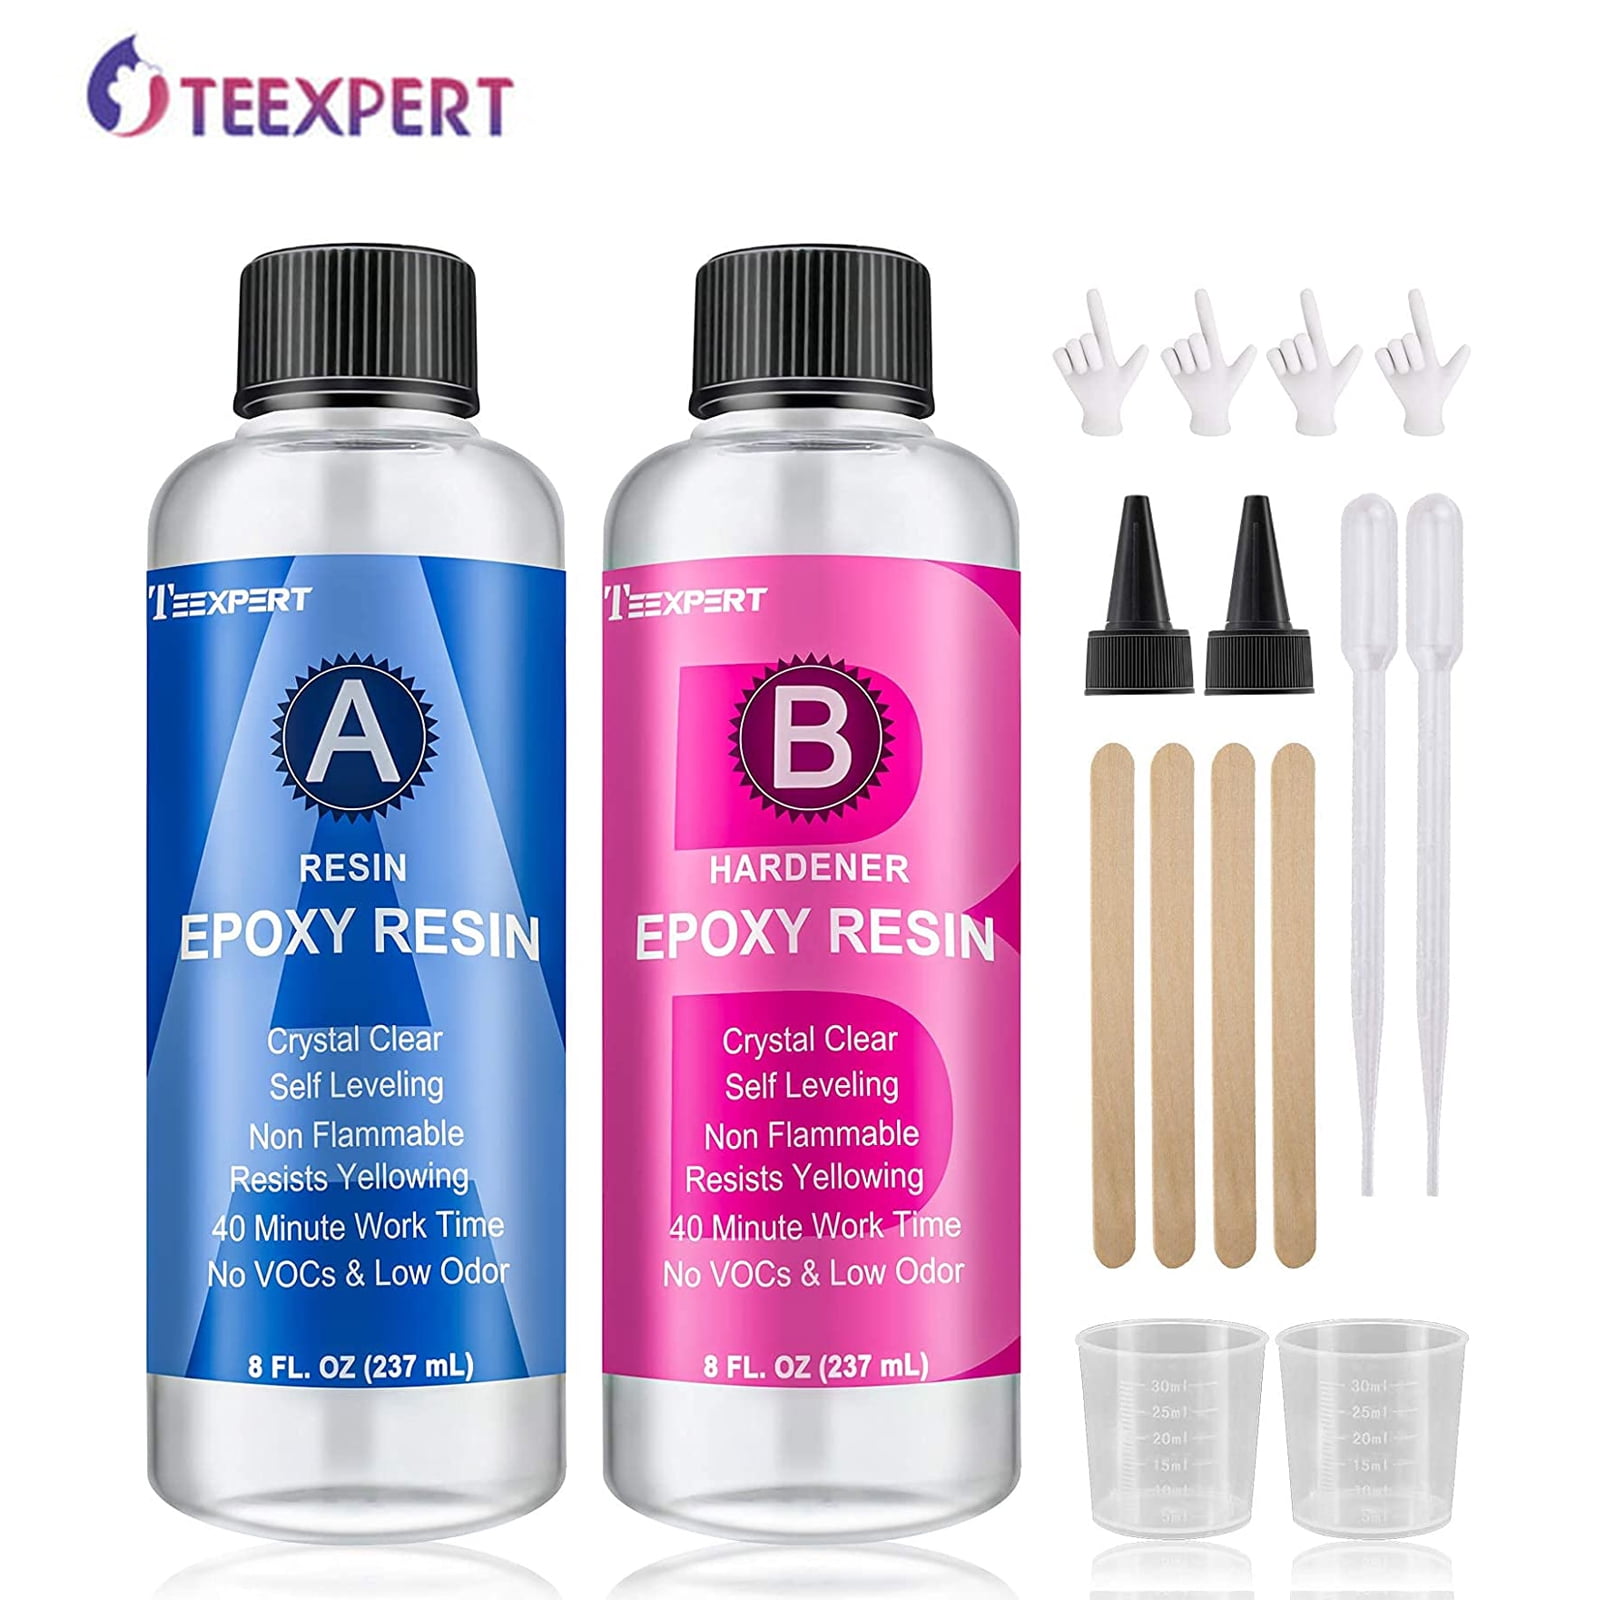 Teexpert Epoxy Resin and Hardener Kit - 16oz for sale online